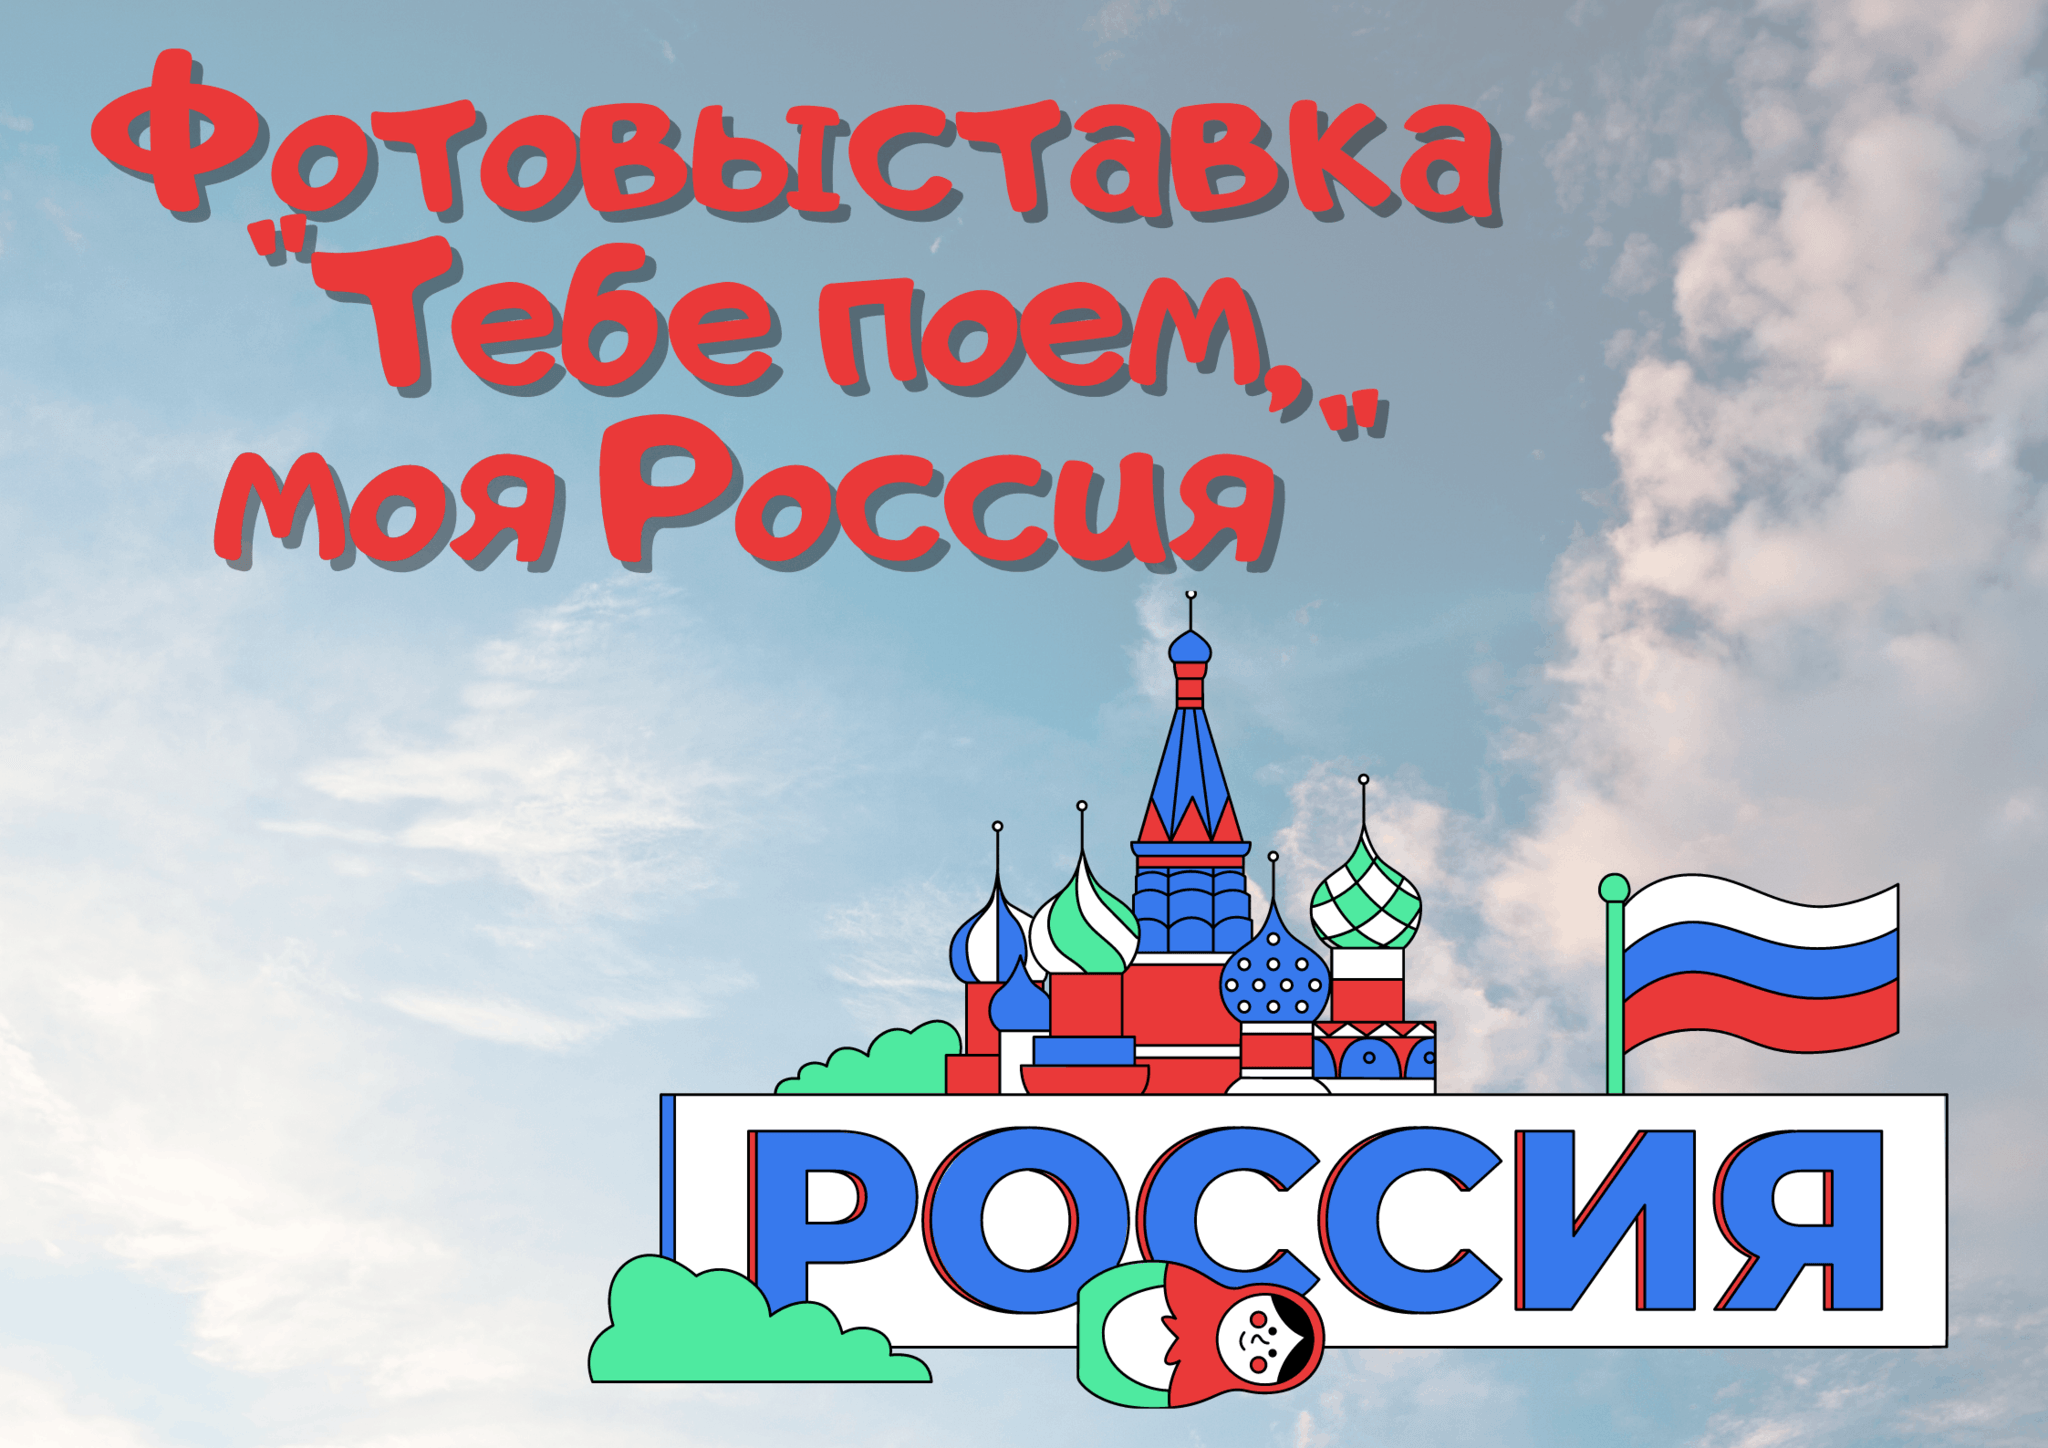 Пою тебе моя россия. Пою тебе моя Россия картинки. Читаю о тебе моя Россия лого.